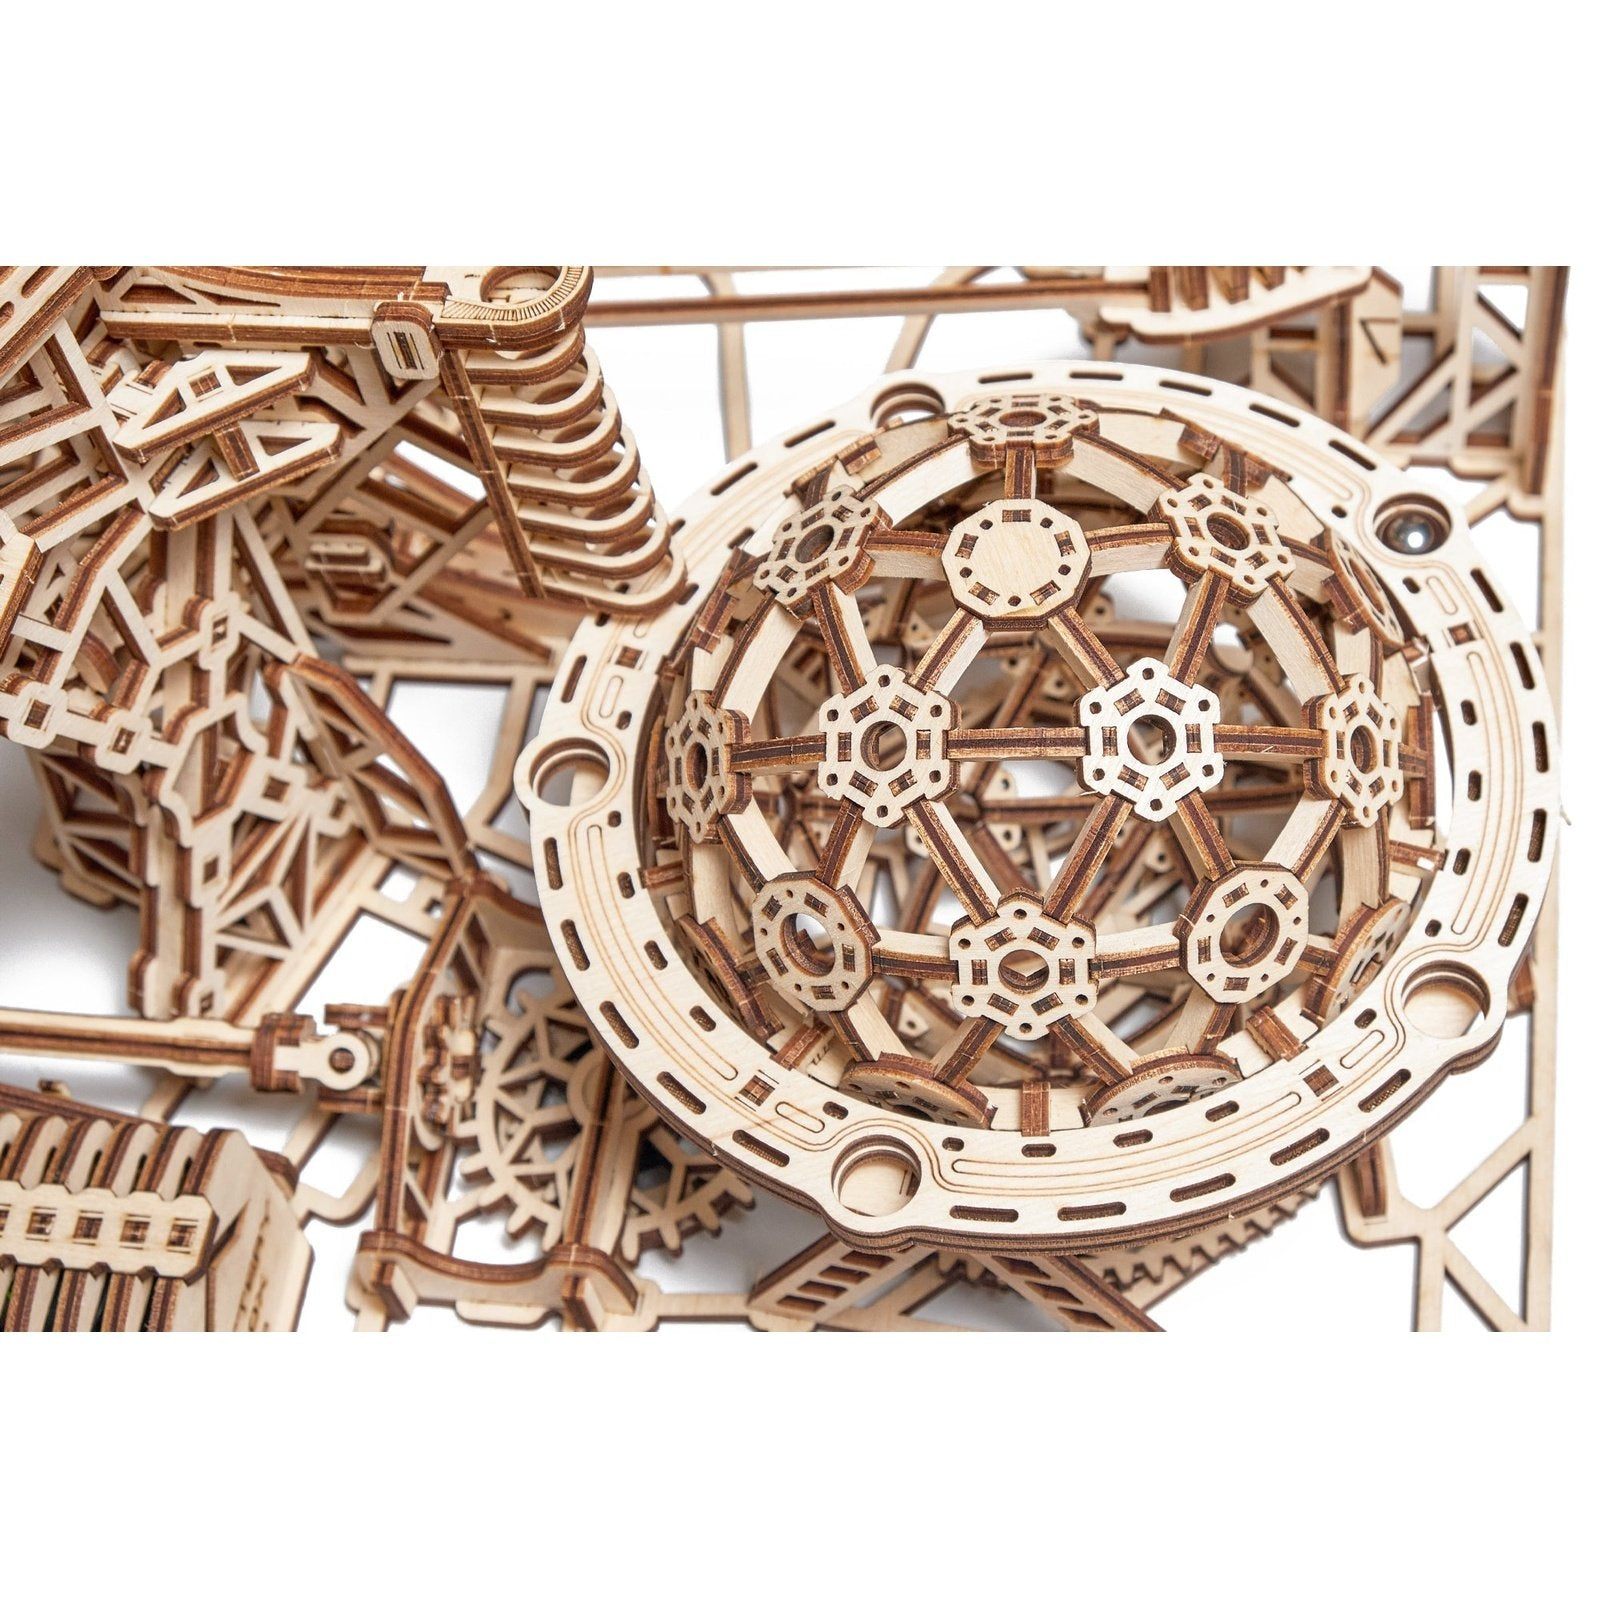 Wood Trick Galaxy Knikkerbaan - Houten Modelbouw